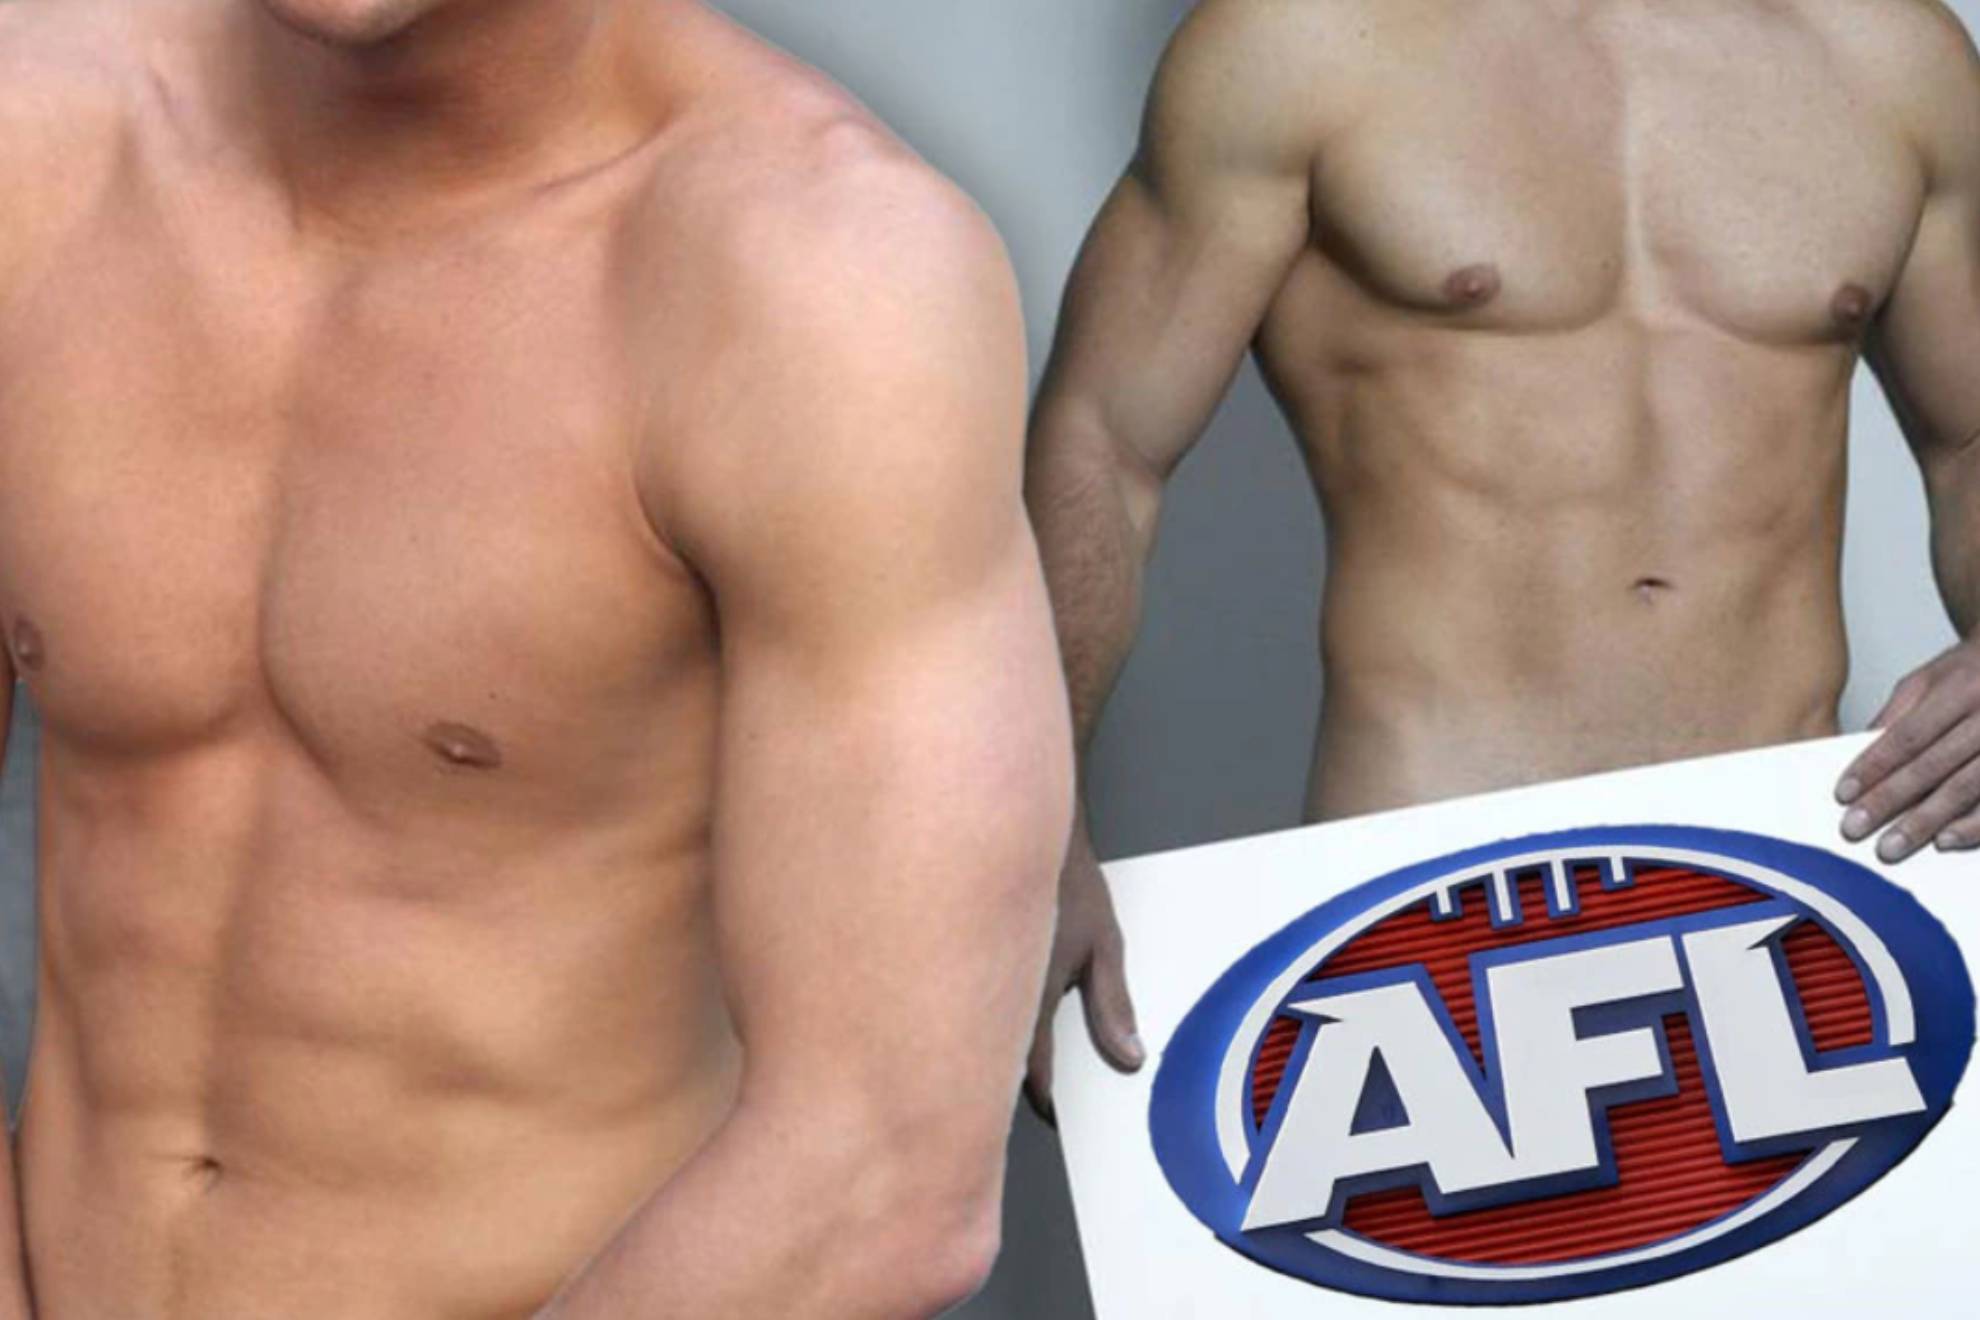 Publican contenidos sexuales de 45 estrellas del fútbol australiano: "Espantoso y repugnante"